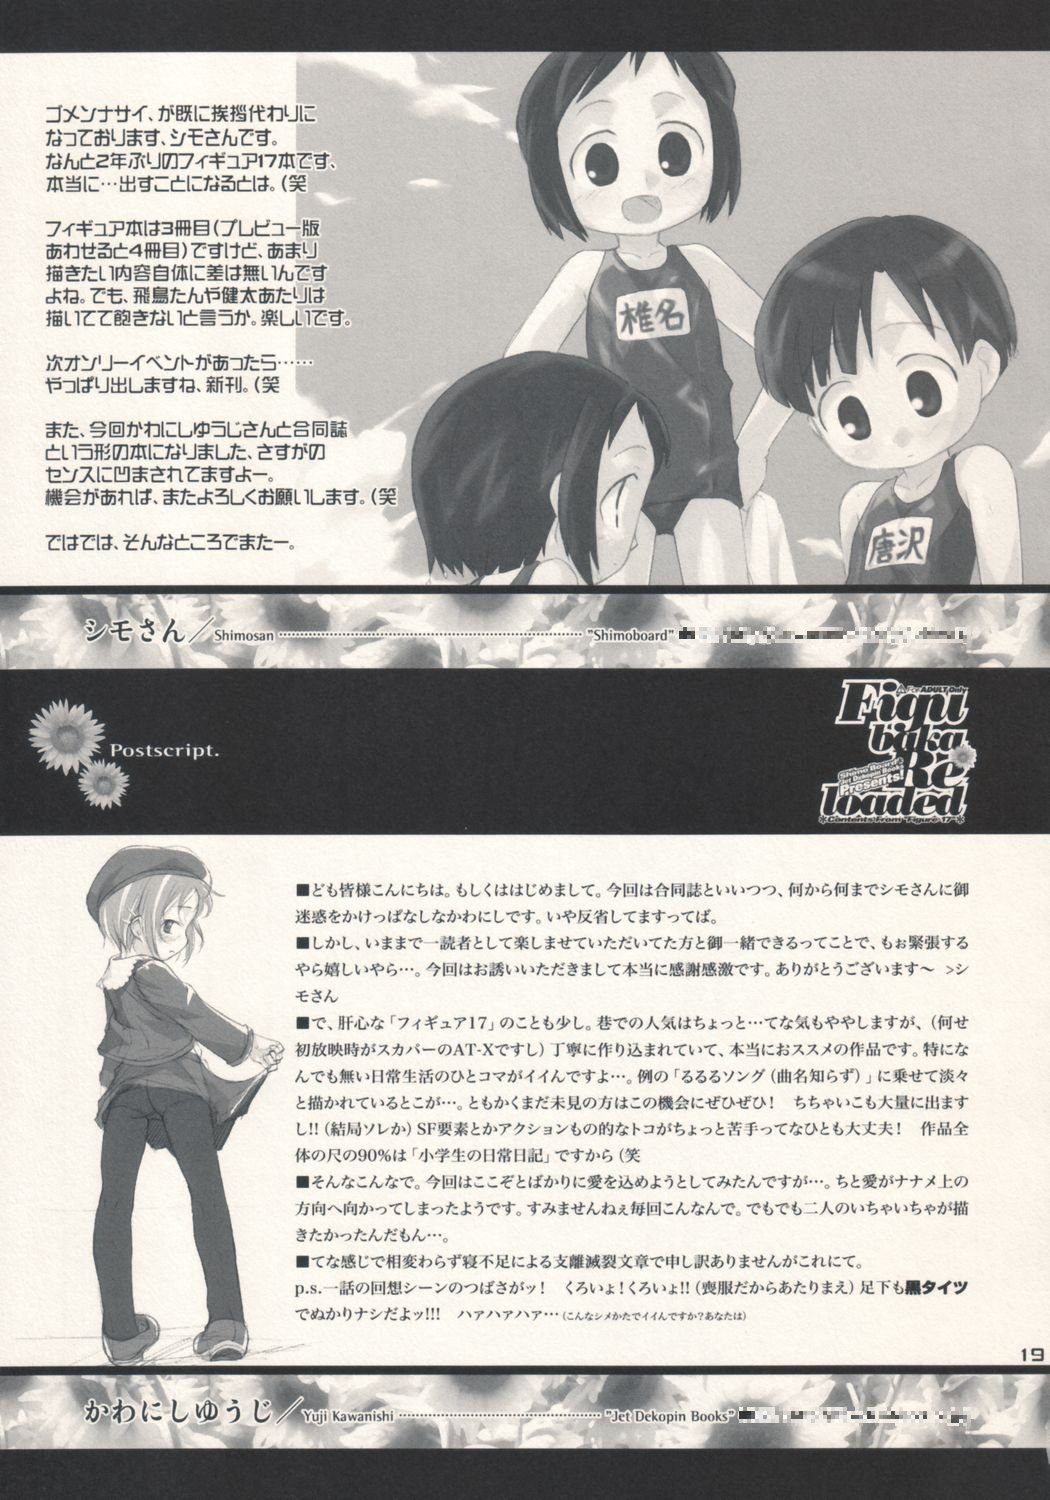 (サンクリ25) [シモボード、Jet Dekopin Books (シモさん、かわにしゆうじ)] Figubaka Reloaded (フィギュア17)